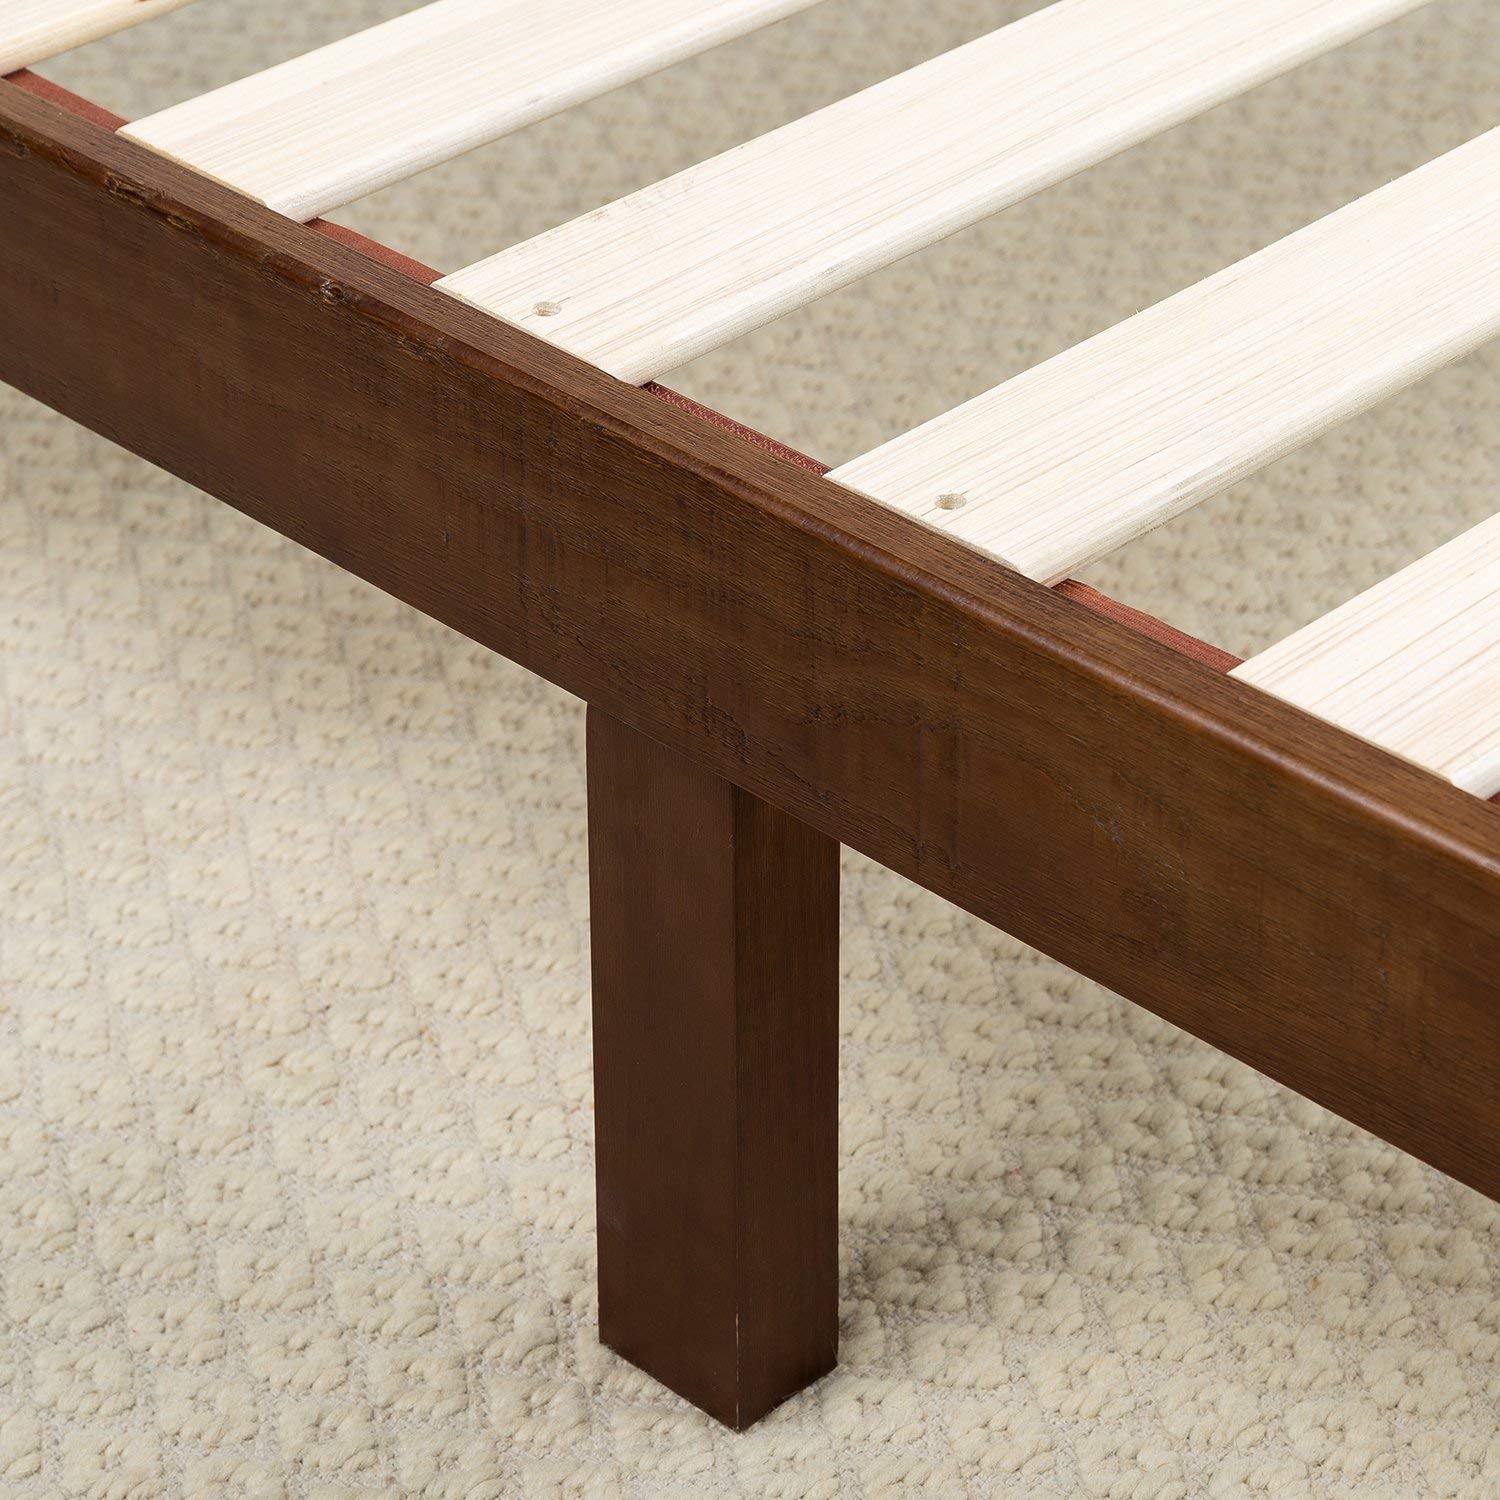 Zinus 12 Inch Wood Platform Bed left view